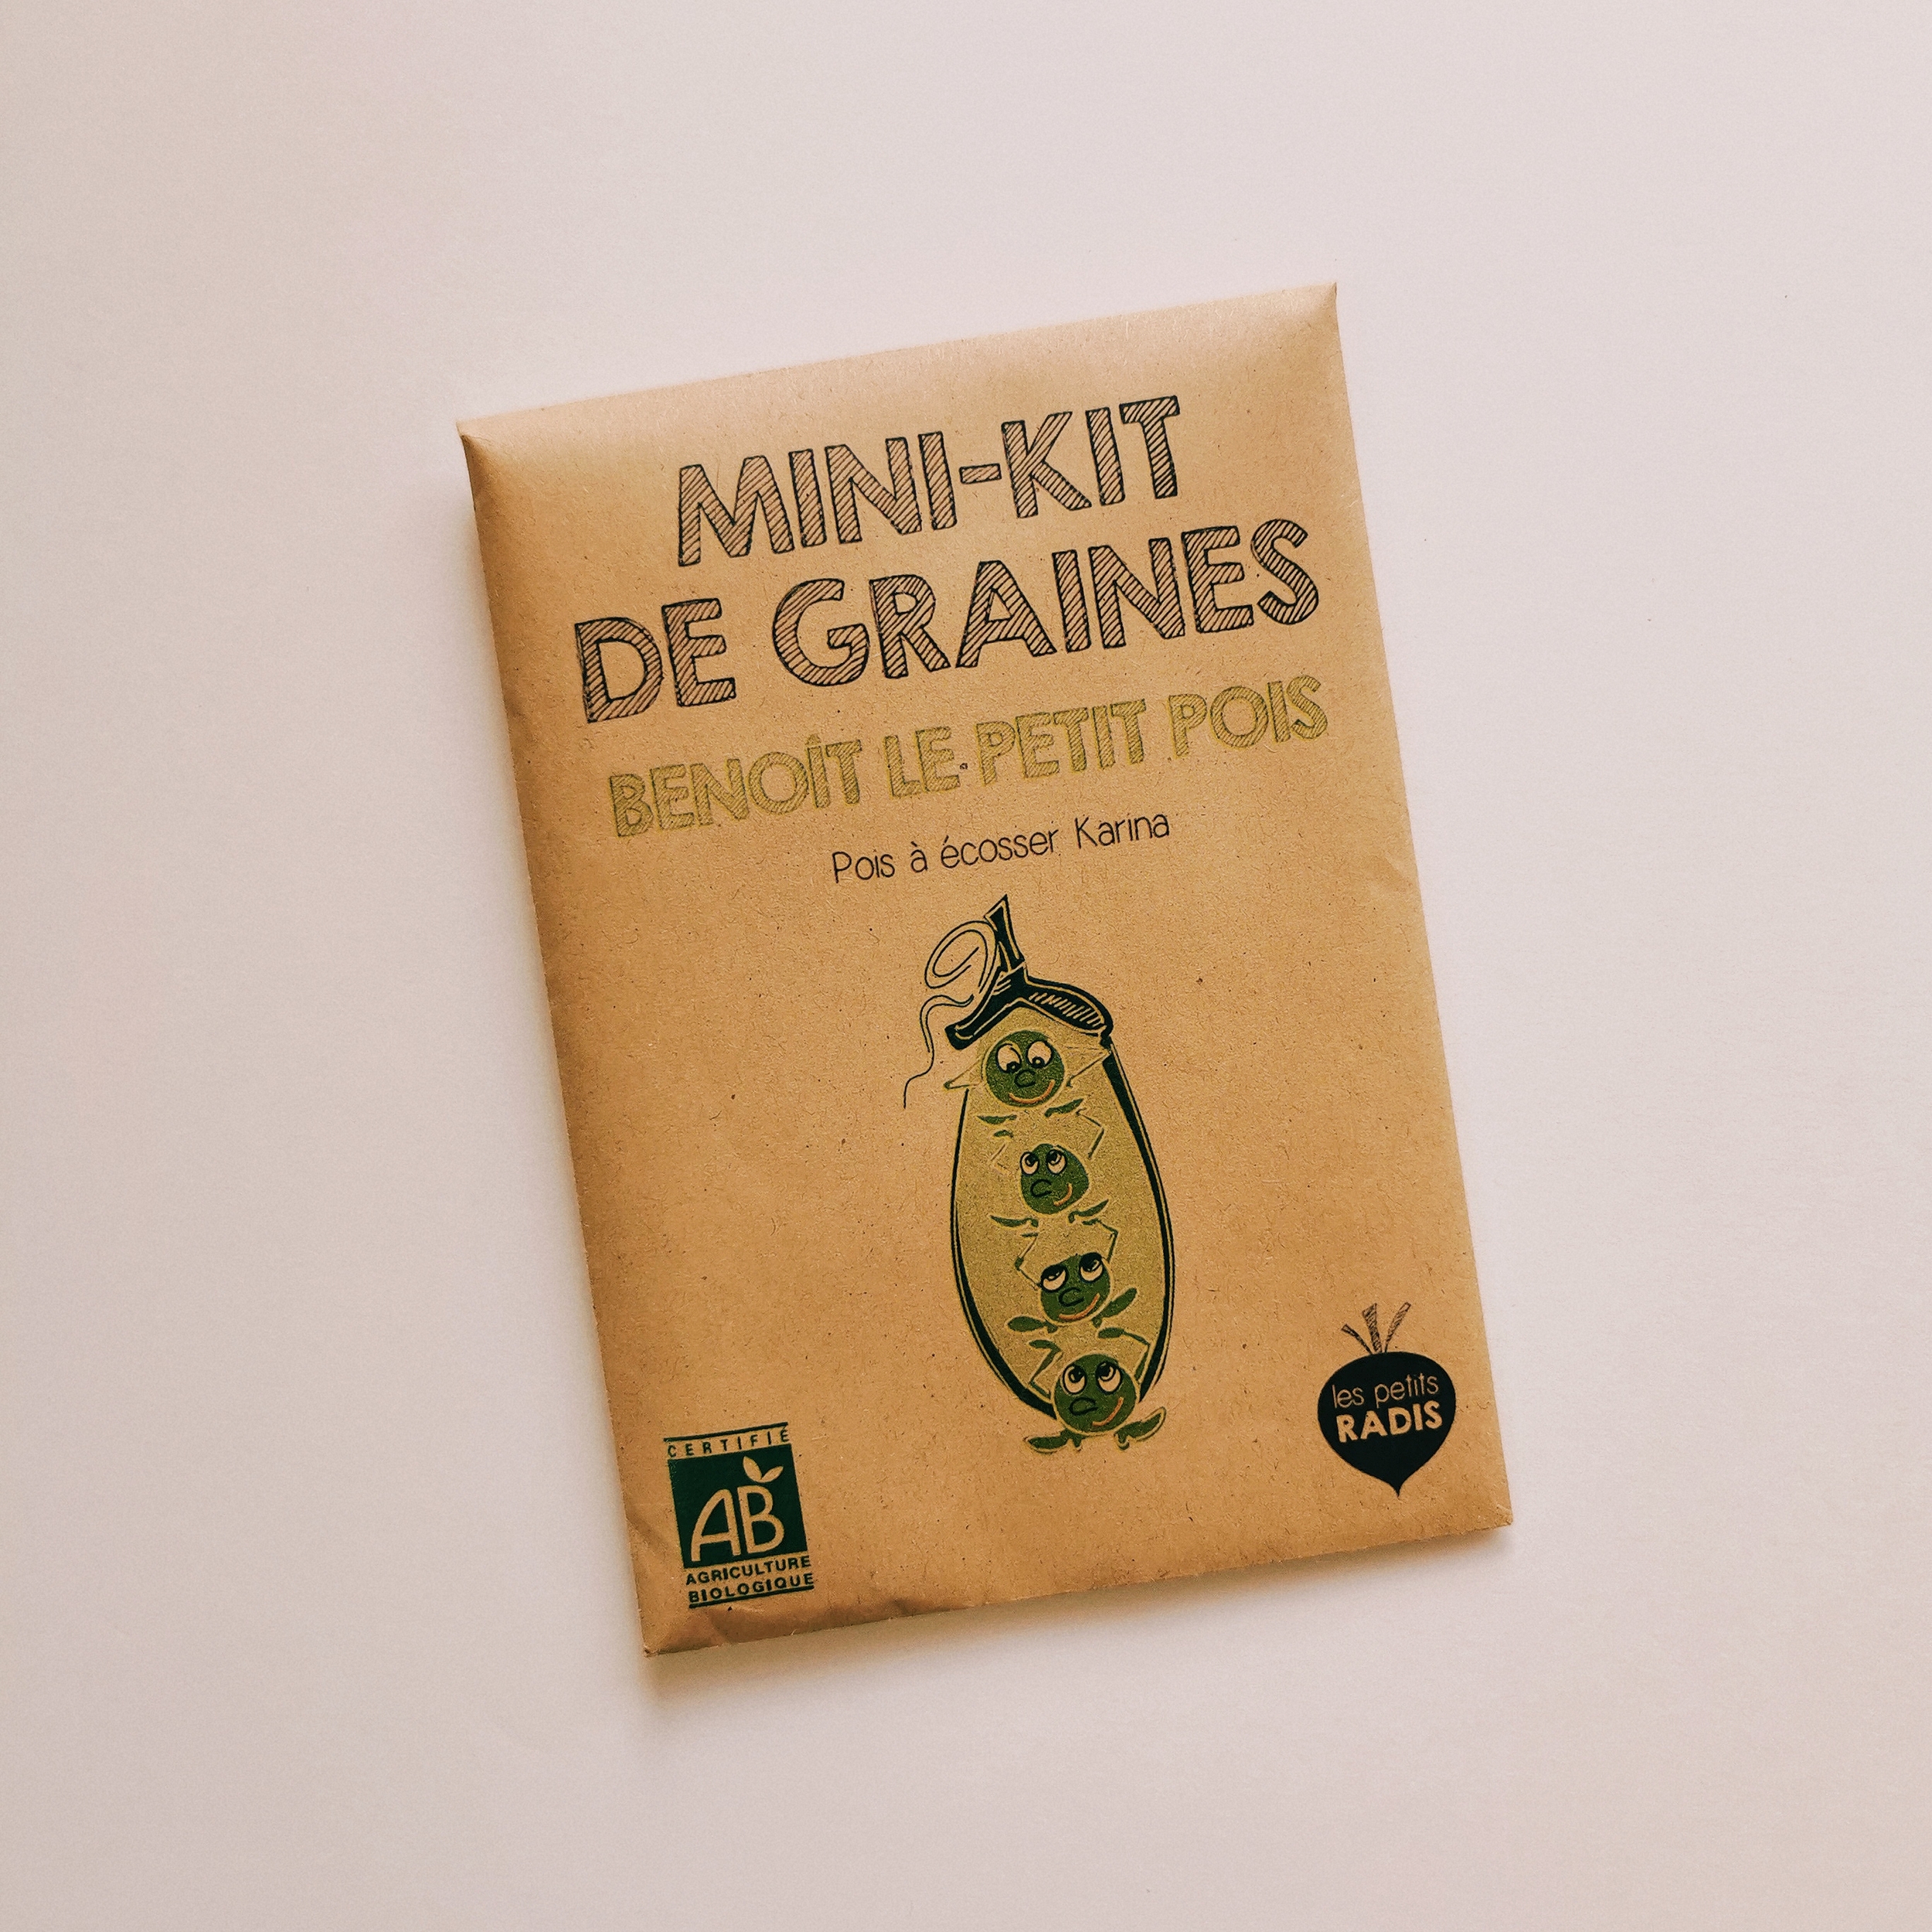 Mini kit de graines bio de Benoît le petit pois